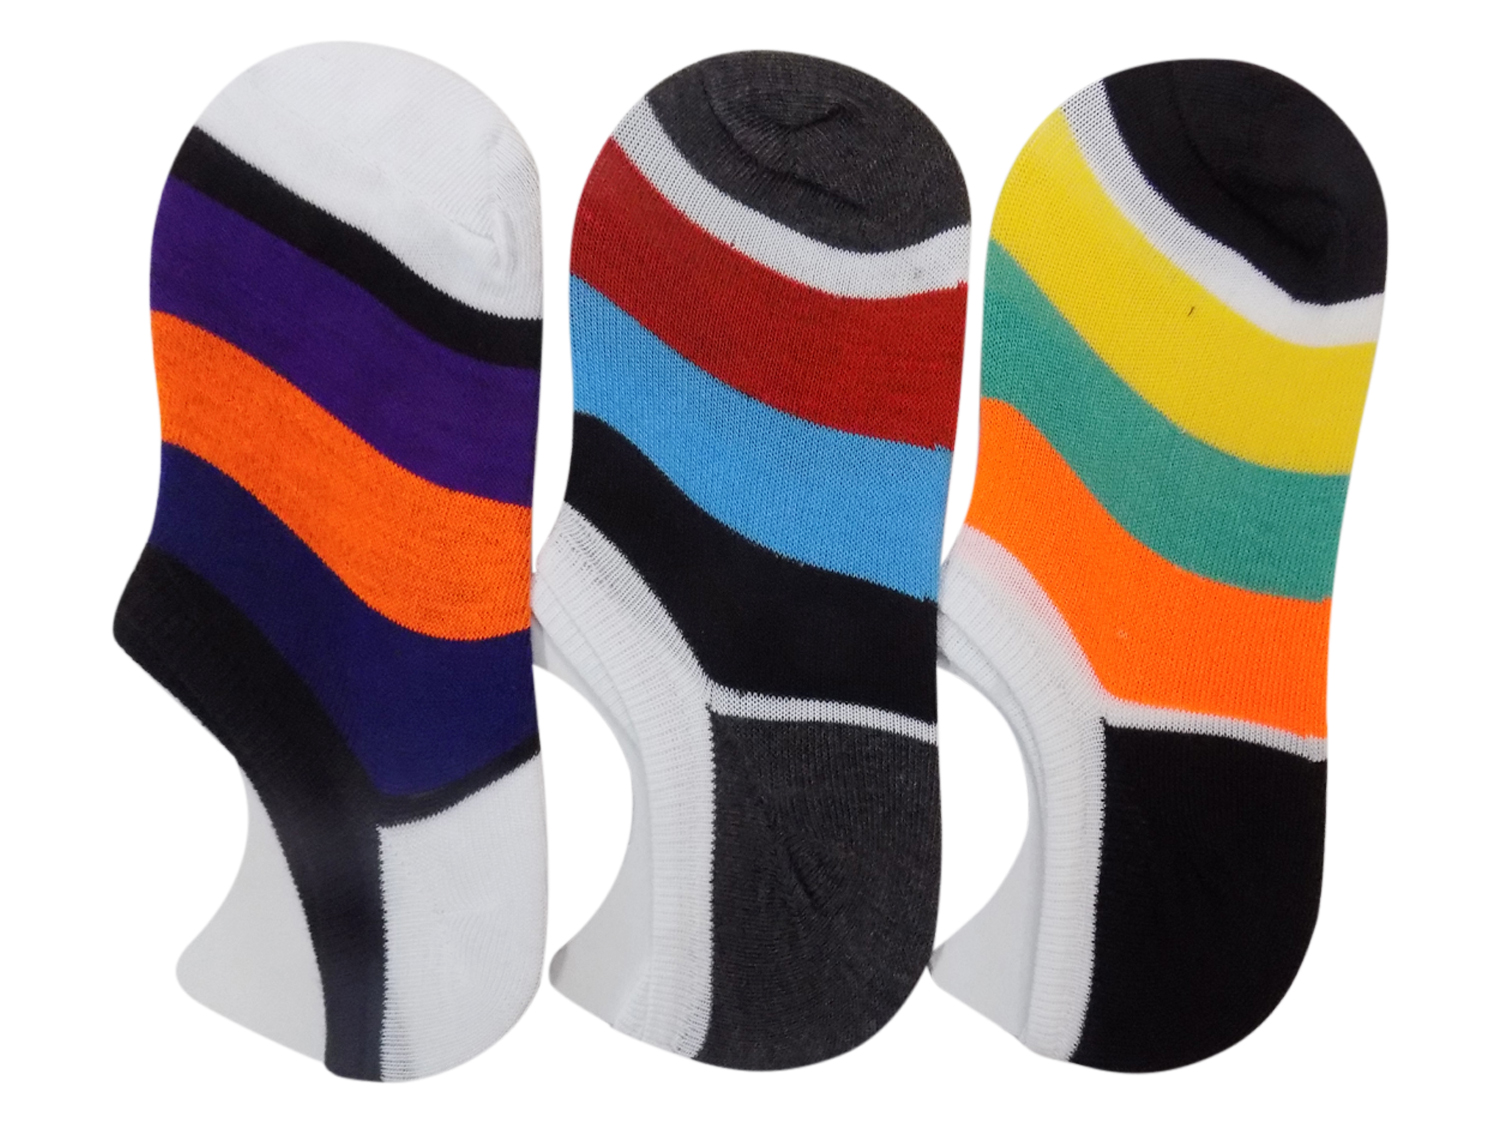 Buy Mens Loafer Socks Multicoloured Pack of 3 Pair Online @ ₹229 from ...